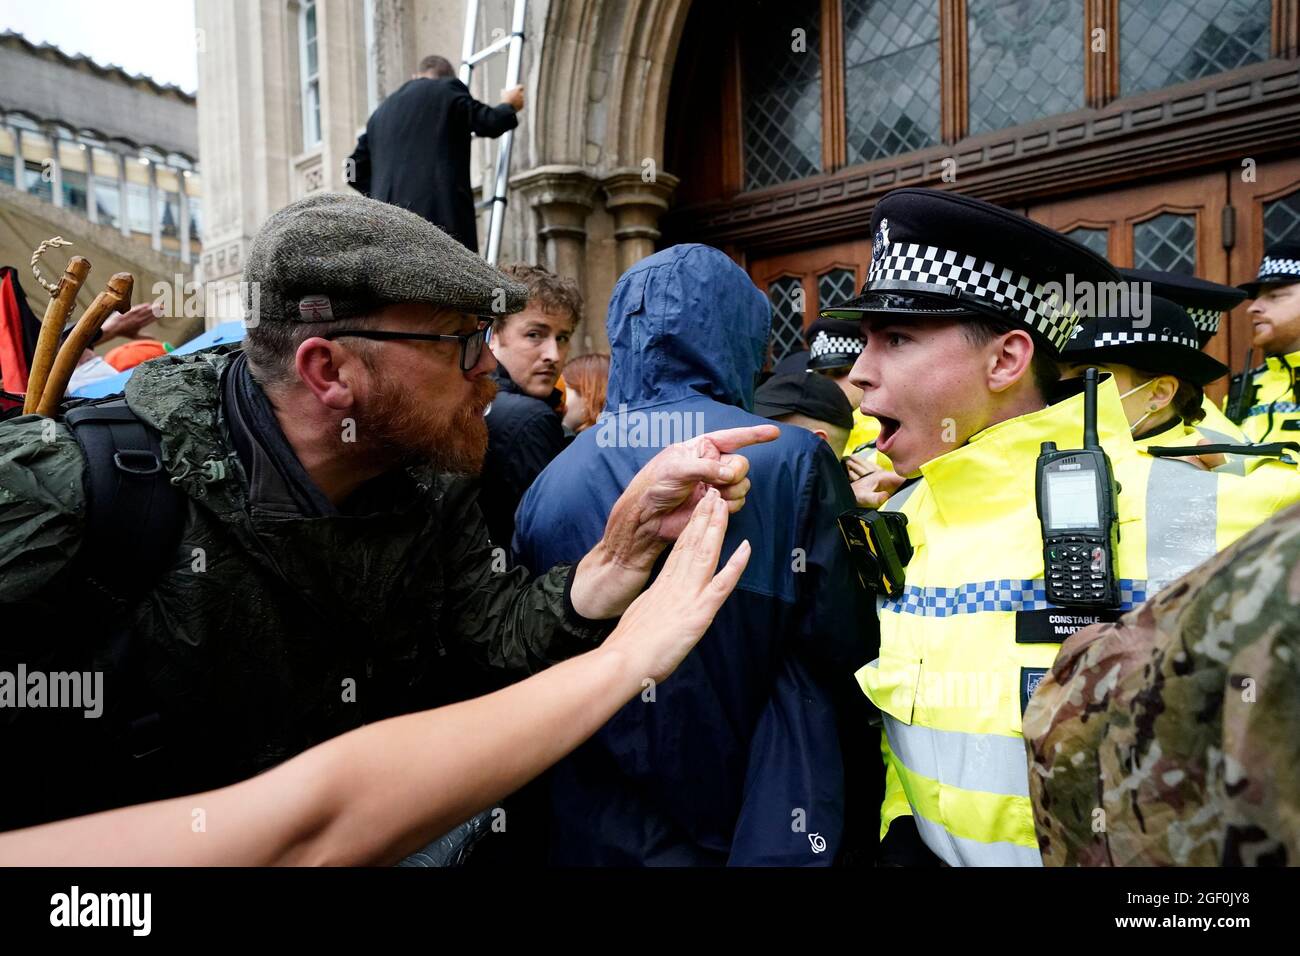 Ein Mann zeigt auf einen Polizisten, während Mitglieder der Extinction Rebellion vor der Guildhall in London protestieren. Bilddatum: Sonntag, 22. August 2021. Stockfoto